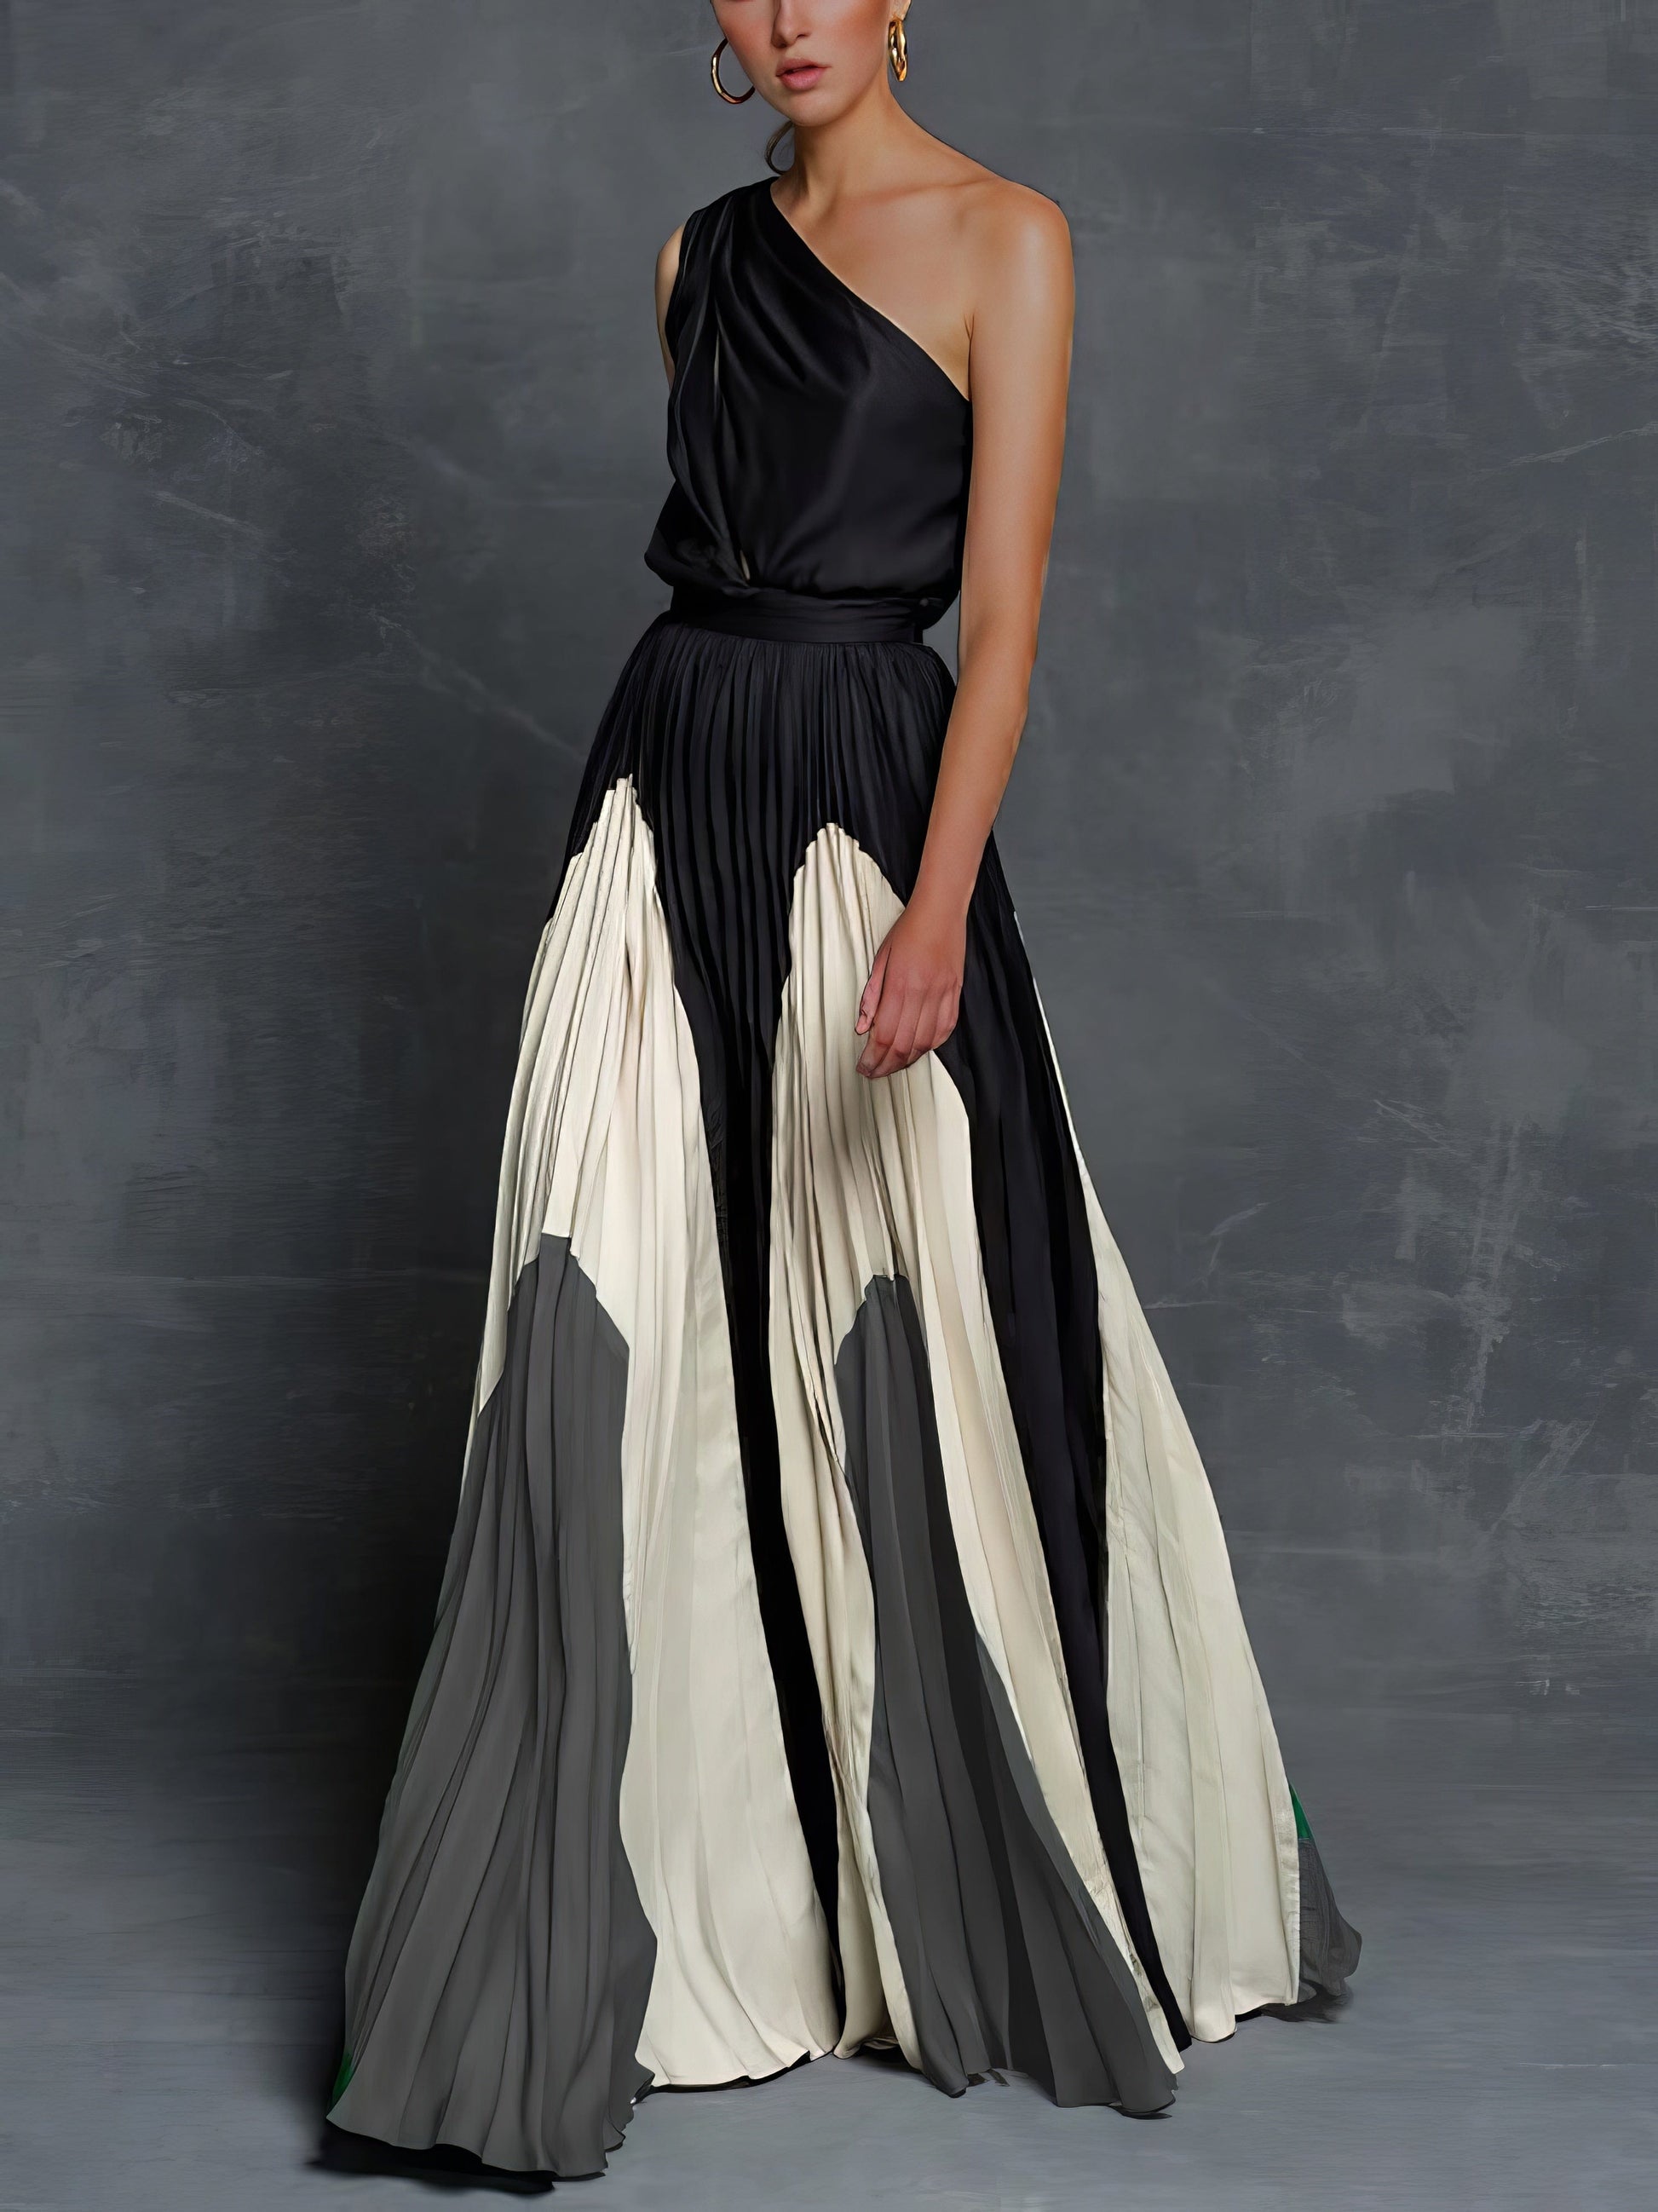 MsDressly Maxi Dresses Elegant One Shoulder Colorblock A Line Prom Dress